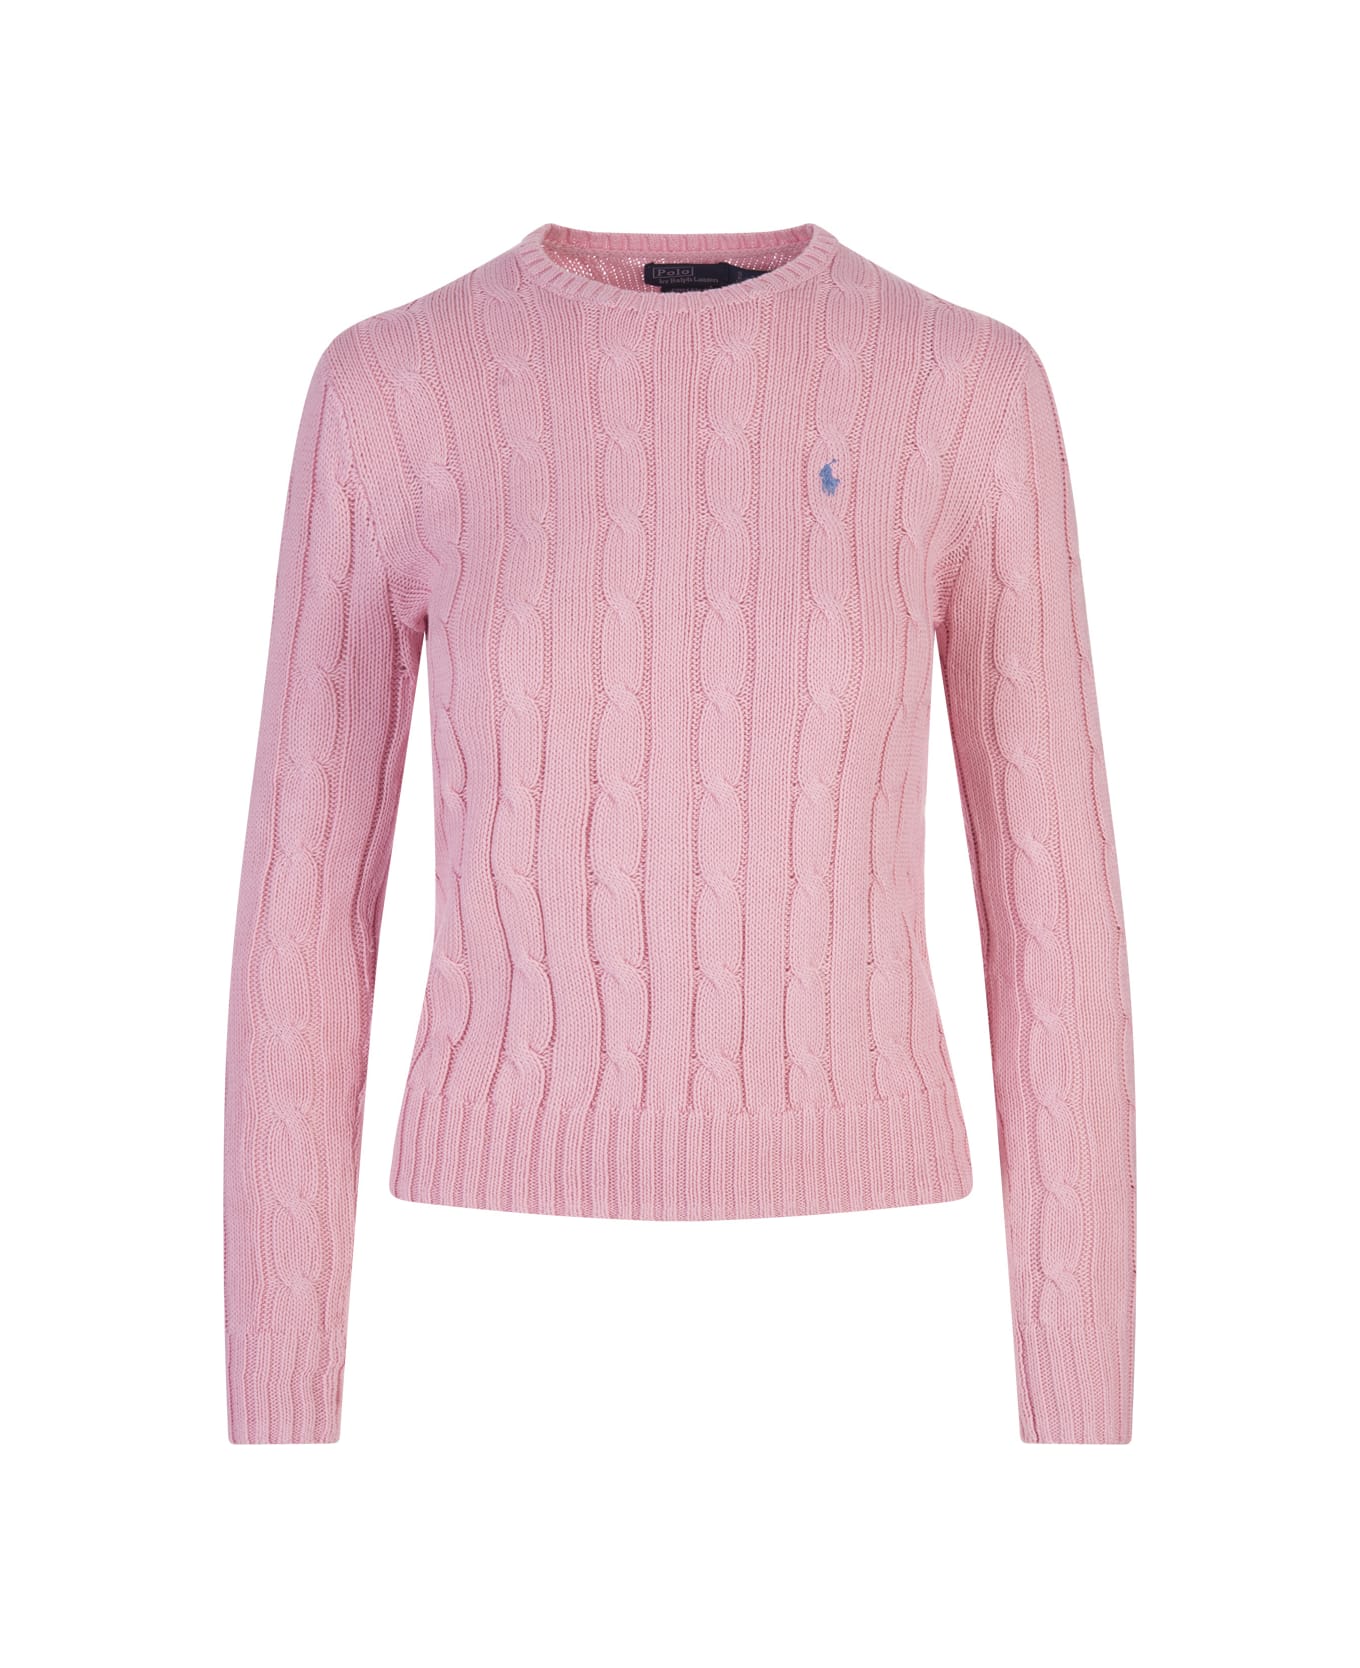 Ralph Lauren Crew Neck Sweater In Pink Braided Knit - Pink